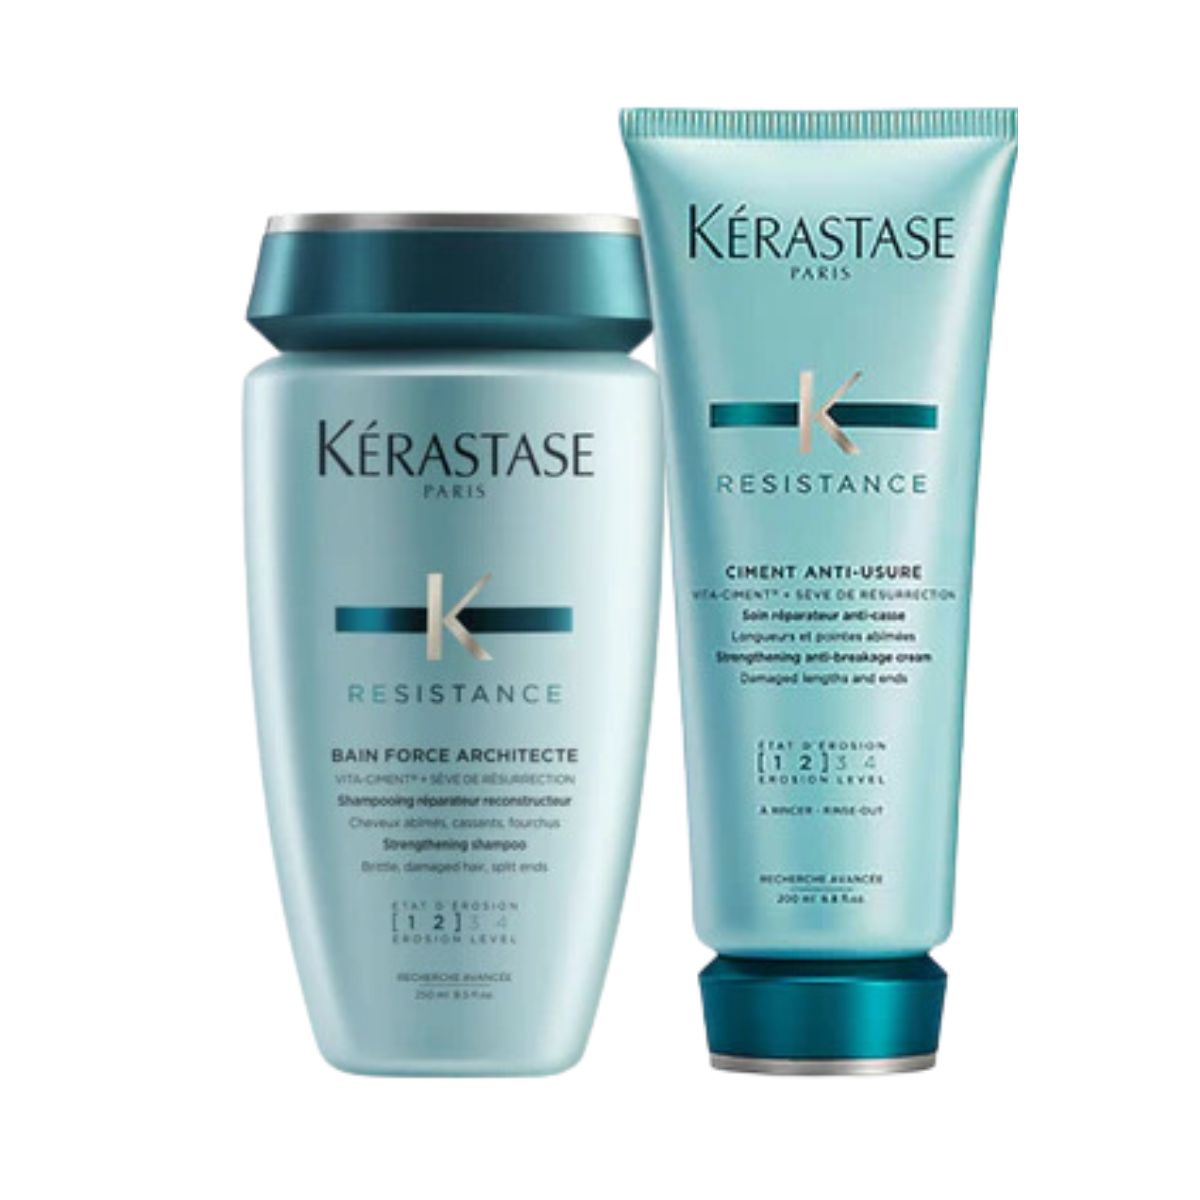 Kérastase Resistance Duo for Strengthening Damaged Hair SAVE 15%